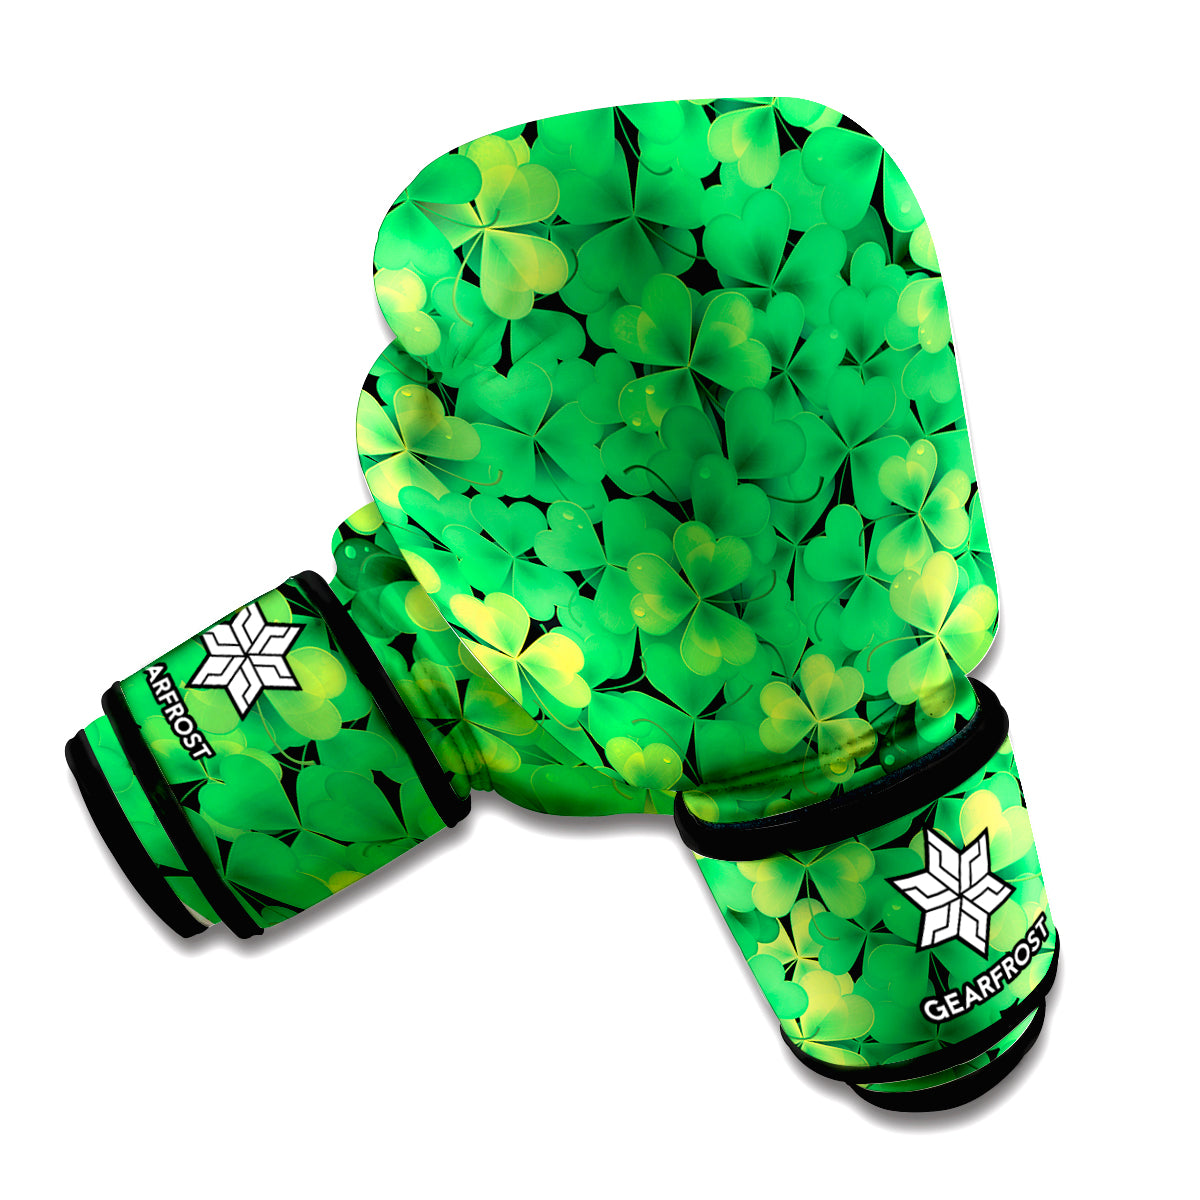 Green Shamrock Leaf Pattern Print Boxing Gloves